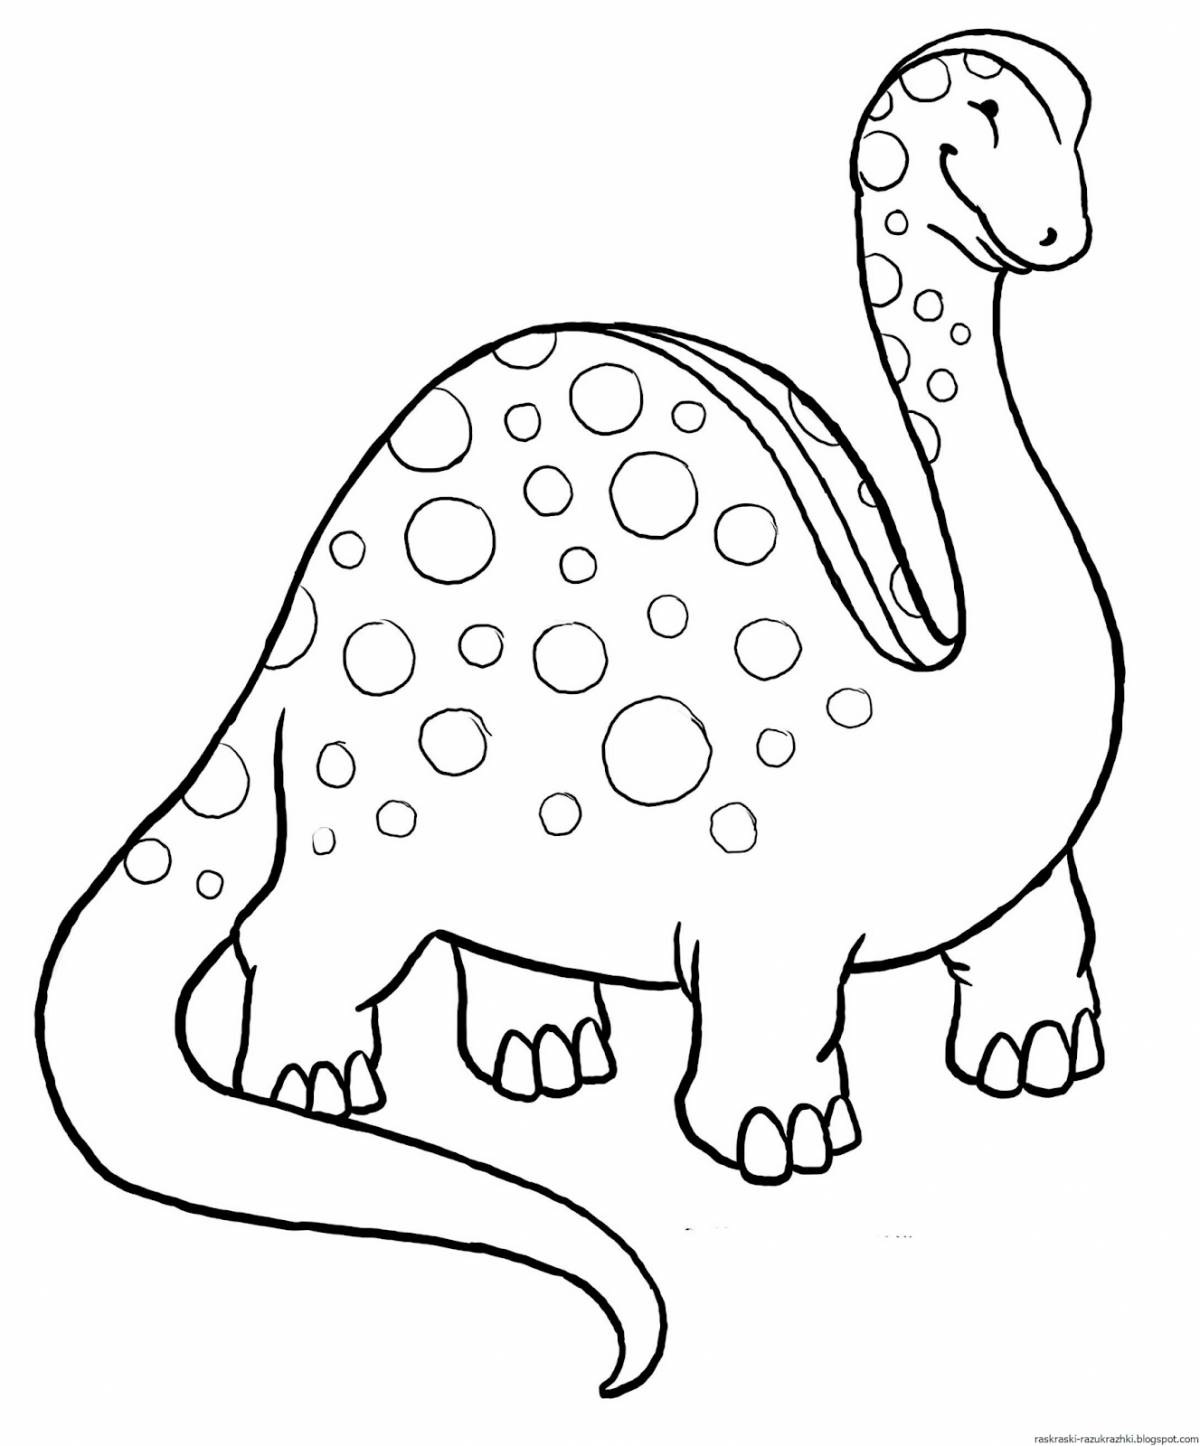 Привлекательная раскраска динозавр